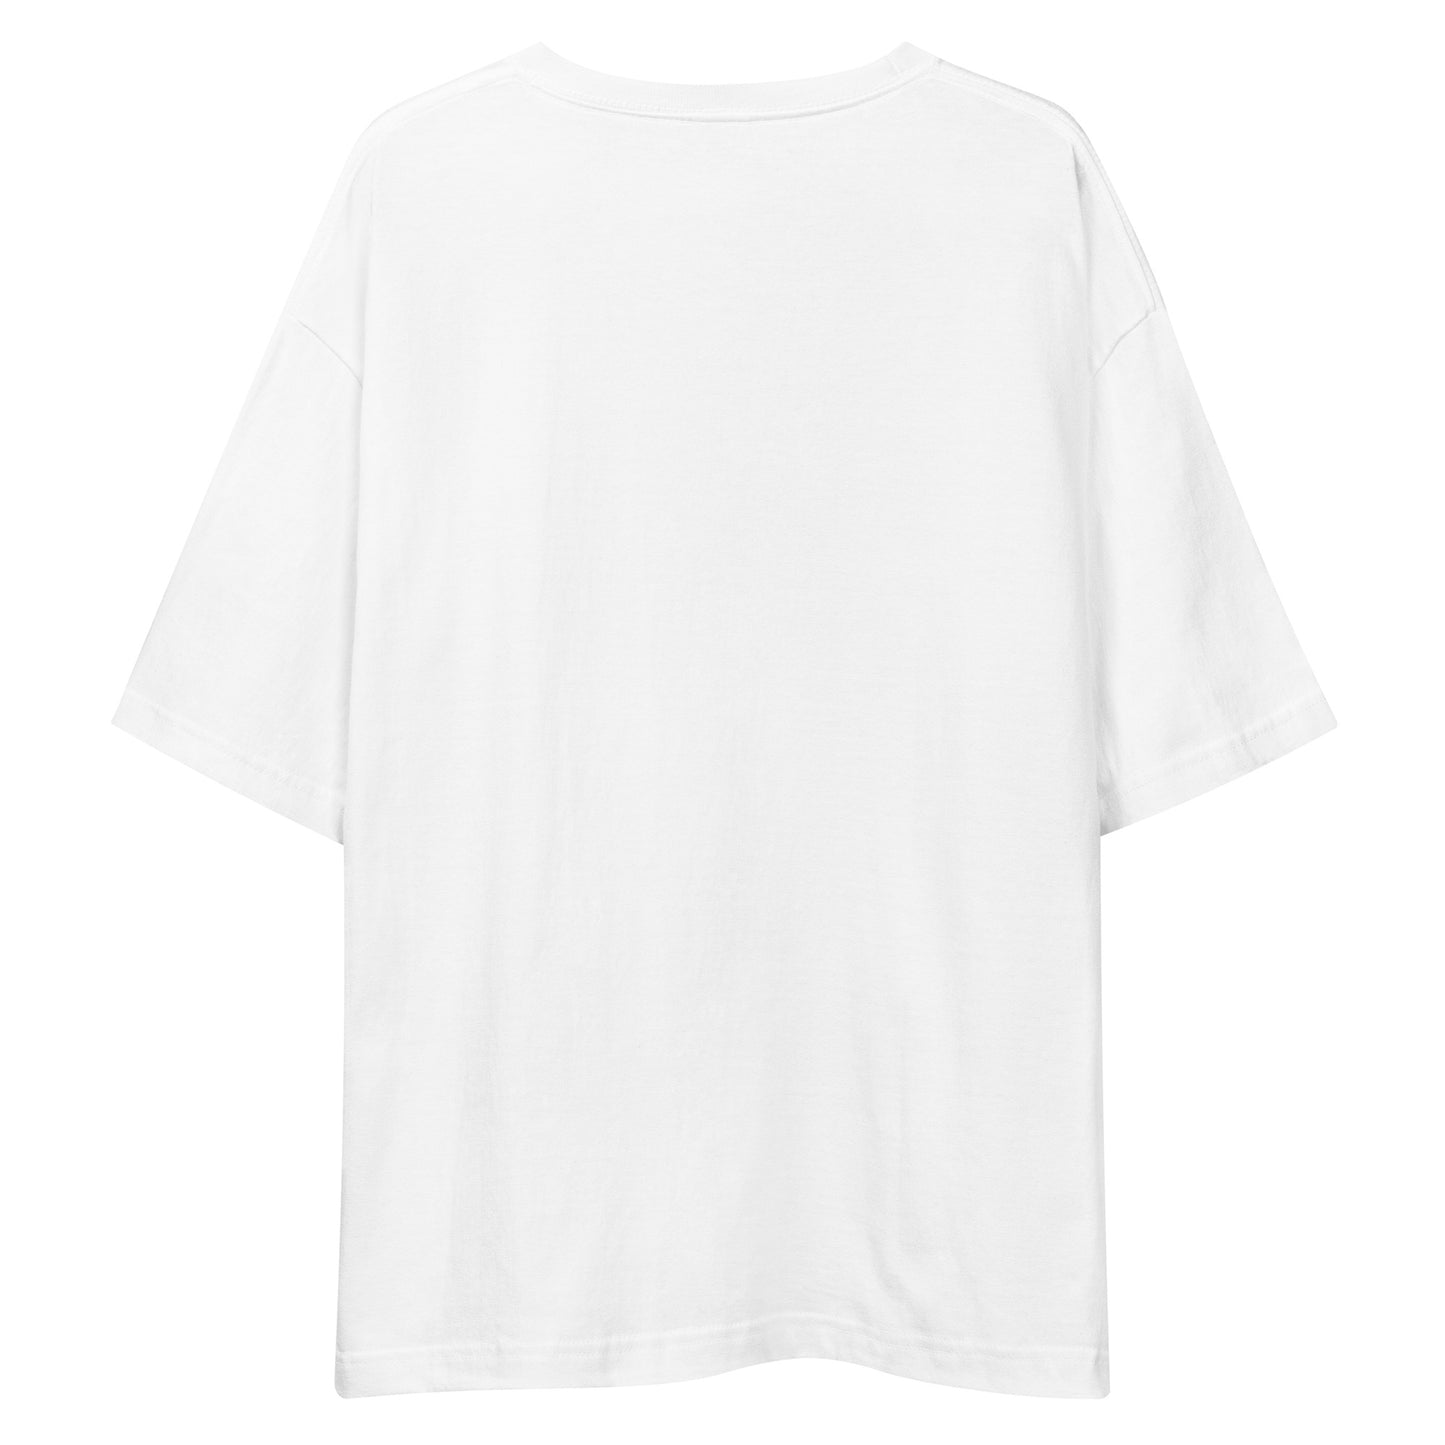 H205 - Tシャツ/ビッグシルエット(ハンティング :ホワイト/グレー )